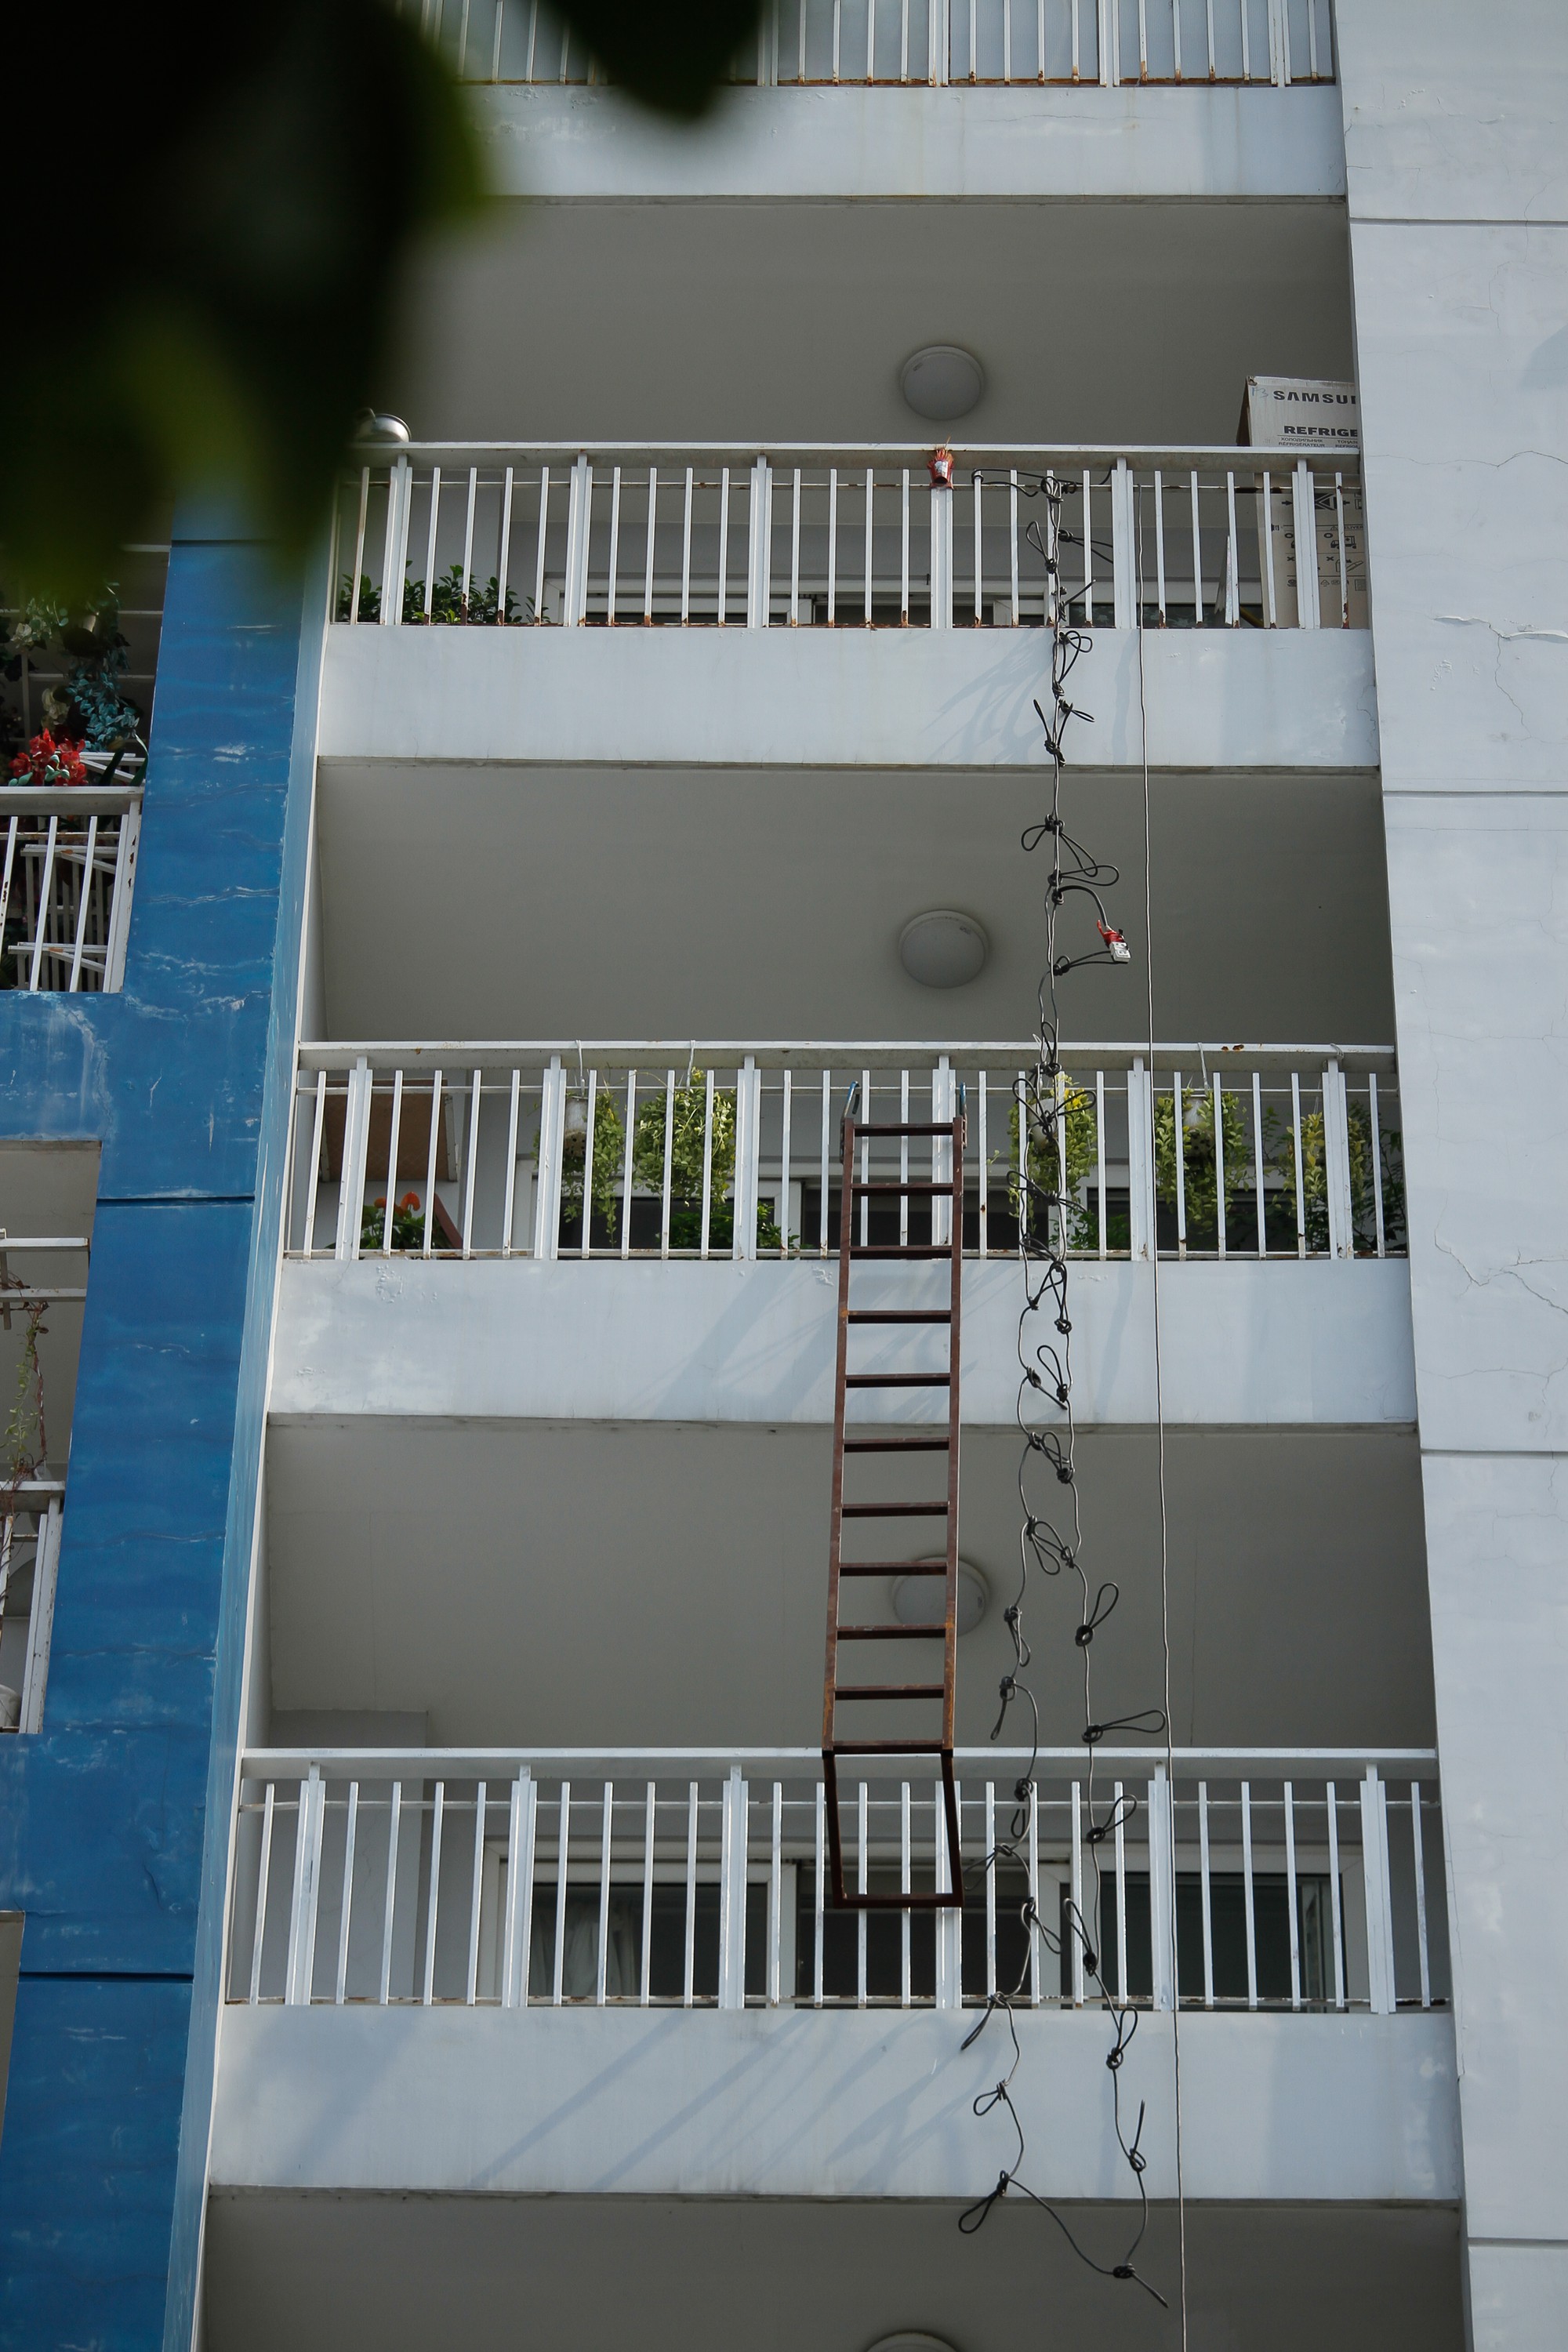 Ám ảnh những chiếc thang dây cháy đen, chăn và rèm cửa lủng lẳng tại hiện trường vụ cháy khiến 13 người thiệt mạng ở Sài Gòn 4